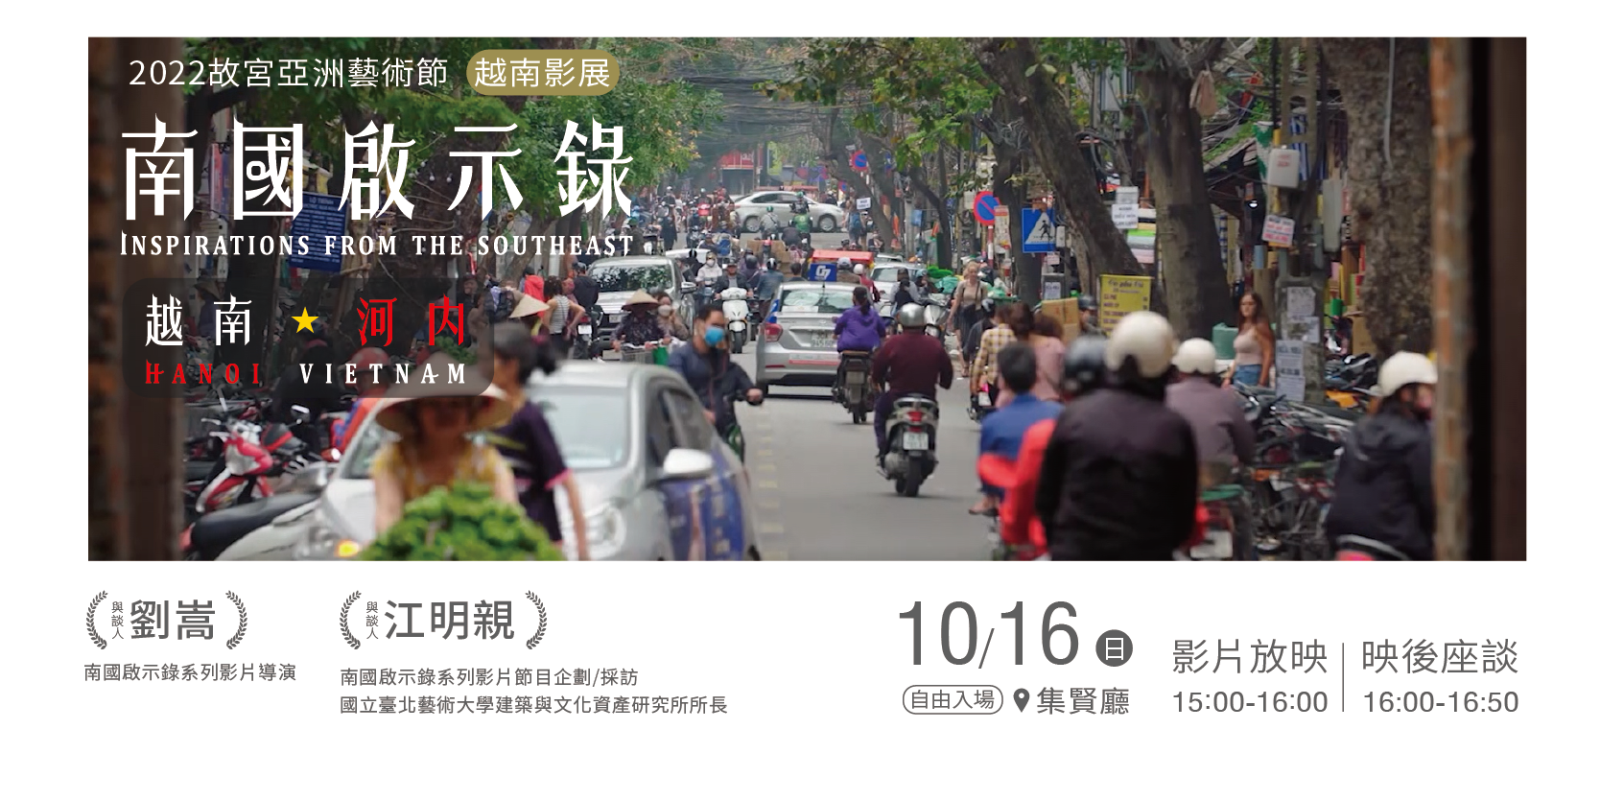 【越南影展】南國啟示錄—越南河內活動海報